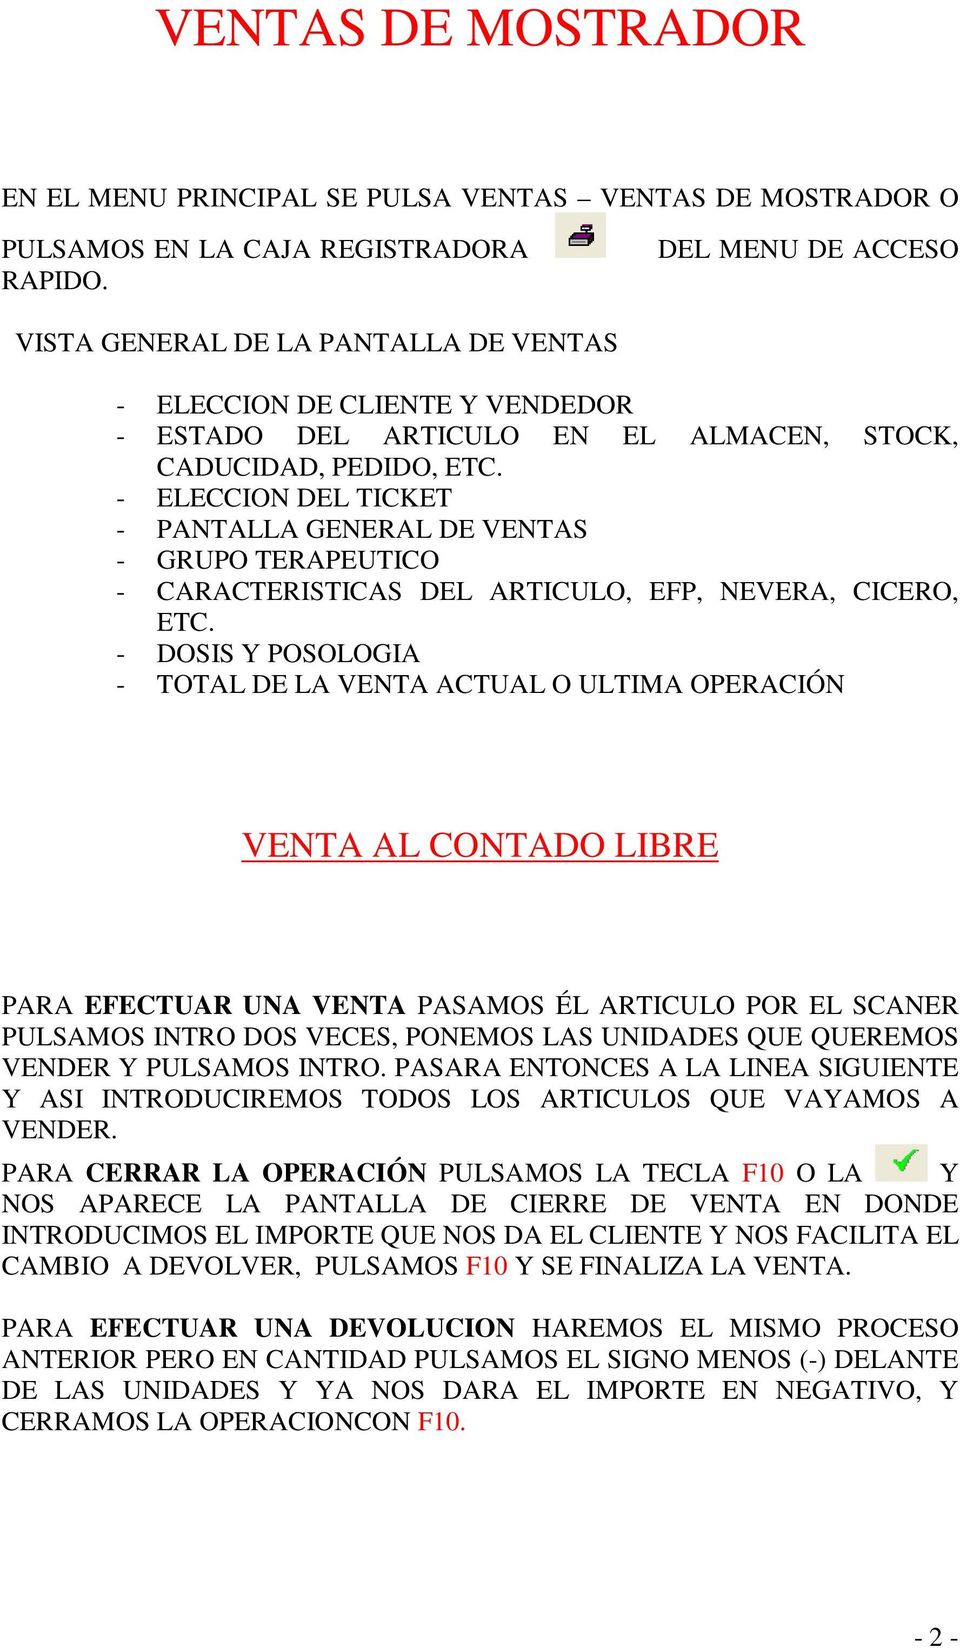 - ELECCION DEL TICKET - PANTALLA GENERAL DE VENTAS - GRUPO TERAPEUTICO - CARACTERISTICAS DEL ARTICULO, EFP, NEVERA, CICERO, ETC.